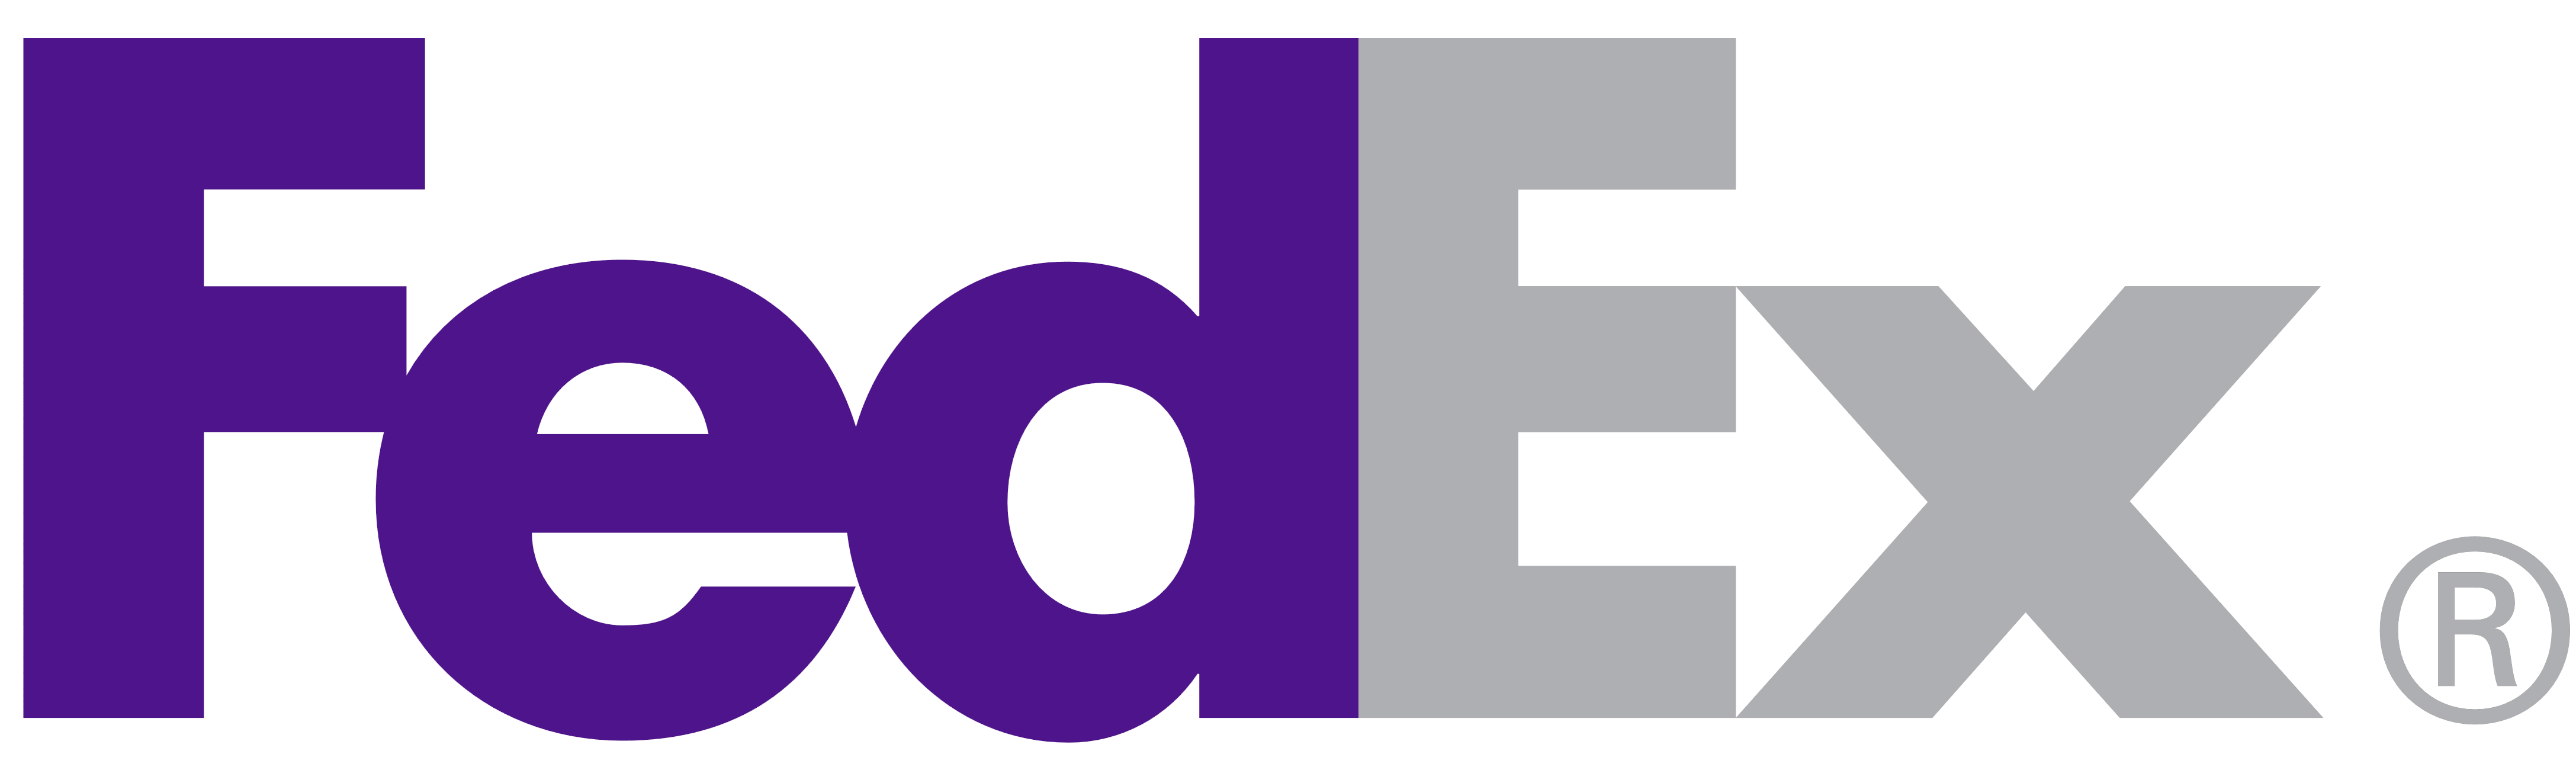 New FedEx Logo - FedEx – Logos Download